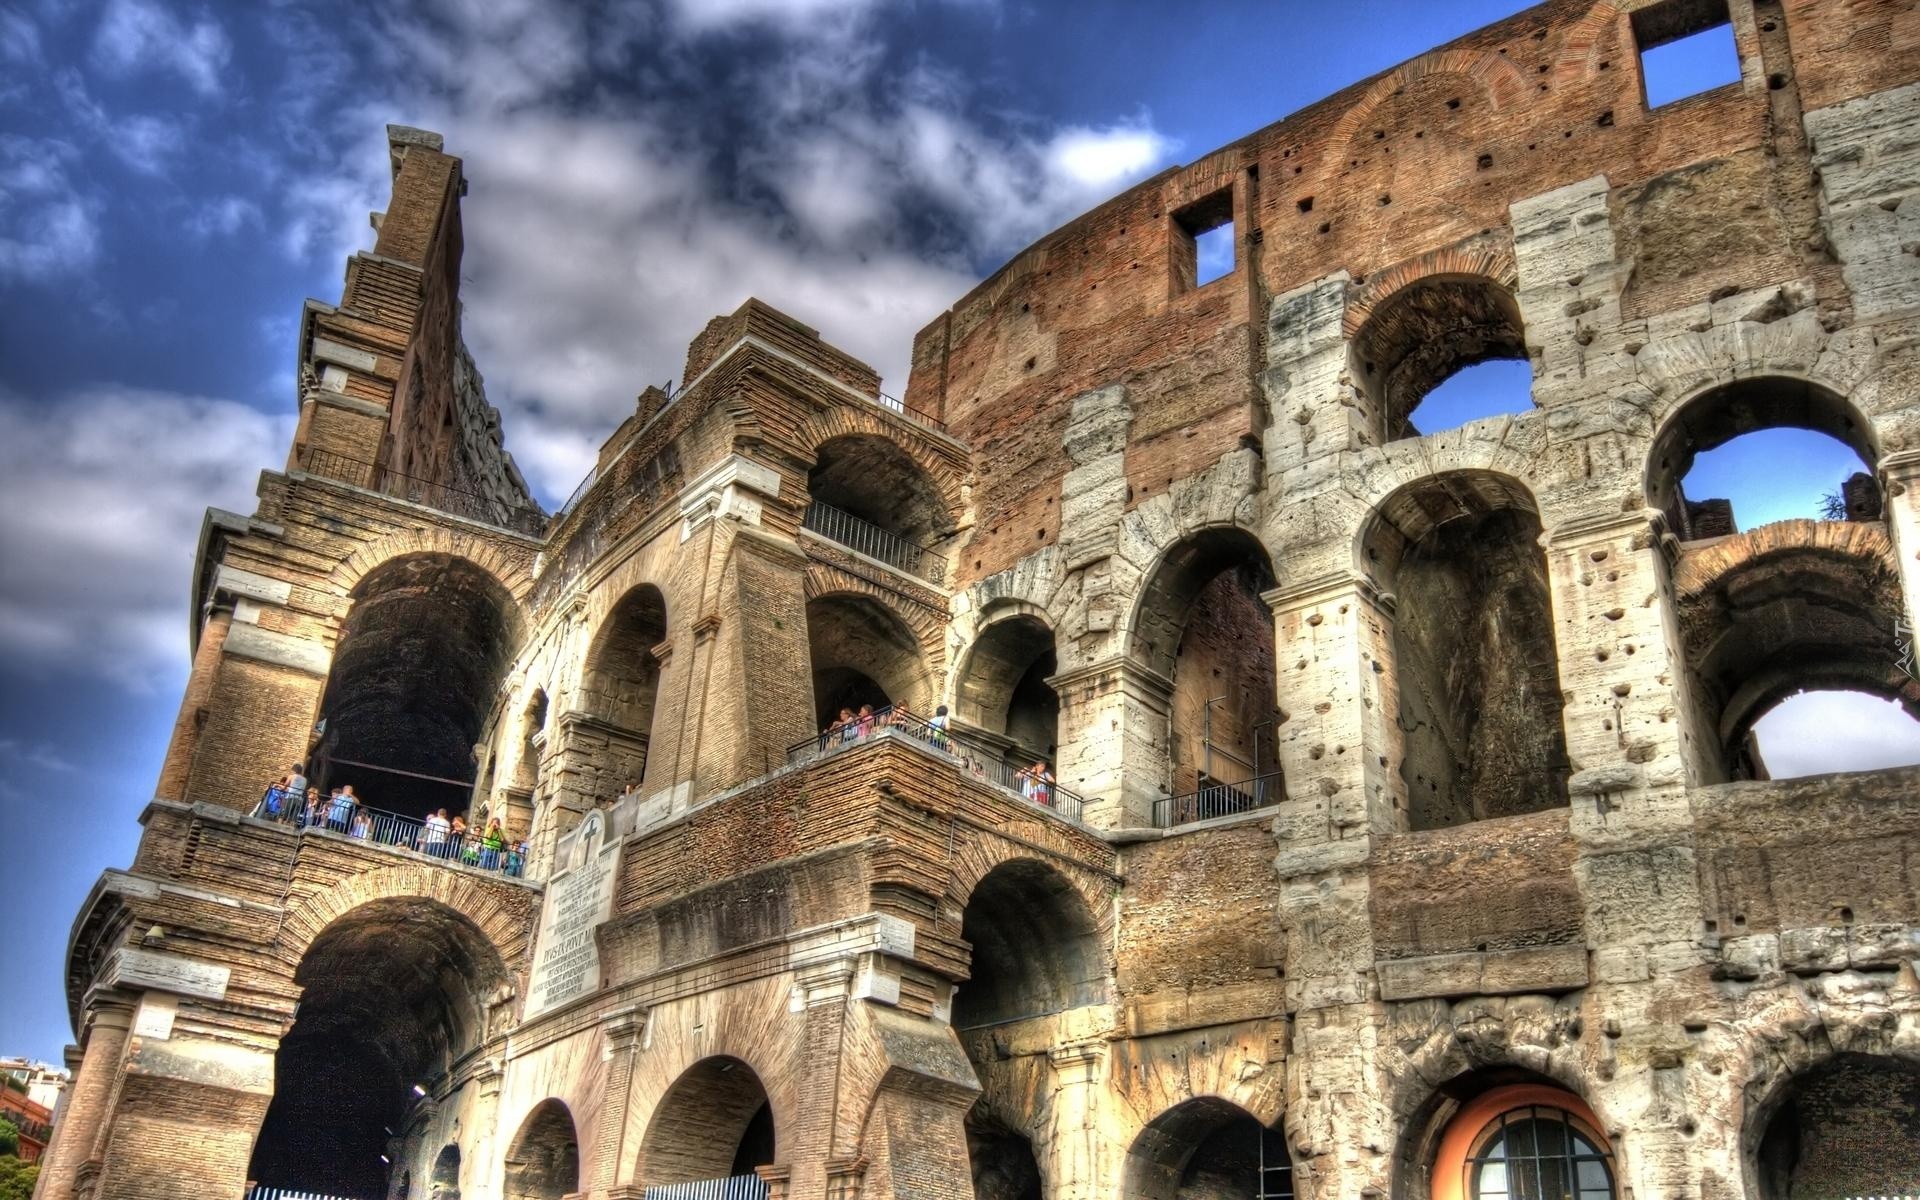 Koloseum, Rzym, Włochy